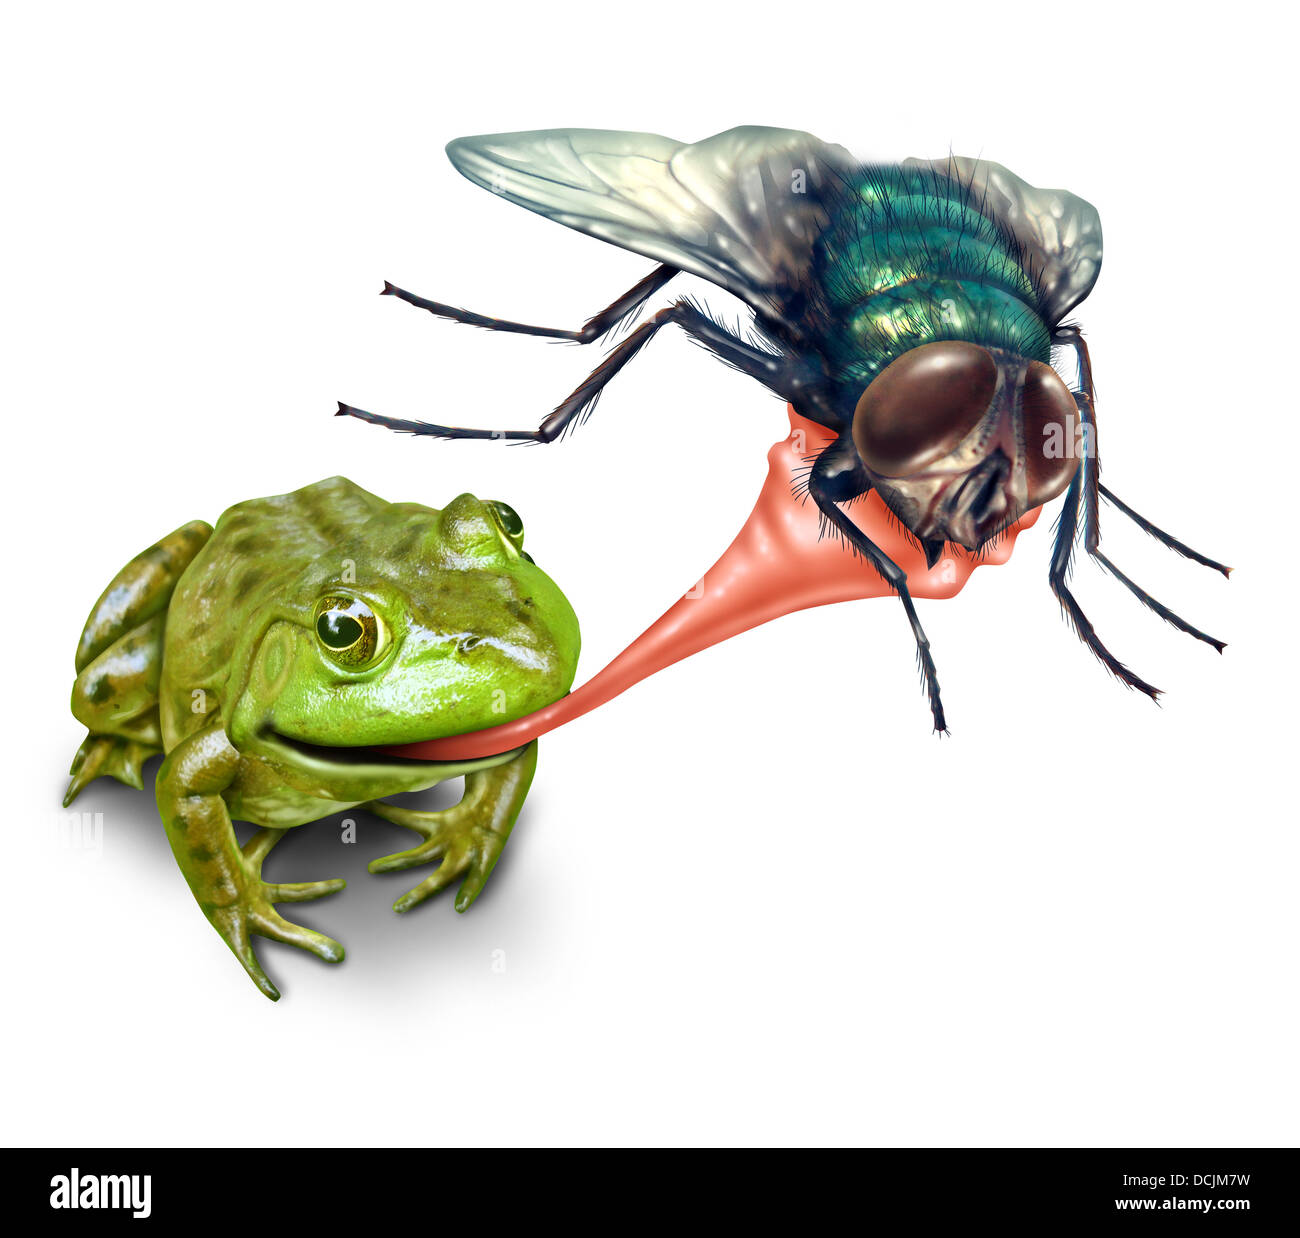 Frosch fangen Fehler mit einer klebrigen Zunge heraus als eine Art Konzept des natürlichen Zyklus des Lebens, wo eine grüne Amphibie fliegen Insekten zum Überleben auf einem weißen Hintergrund frisst, schießen. Stockfoto